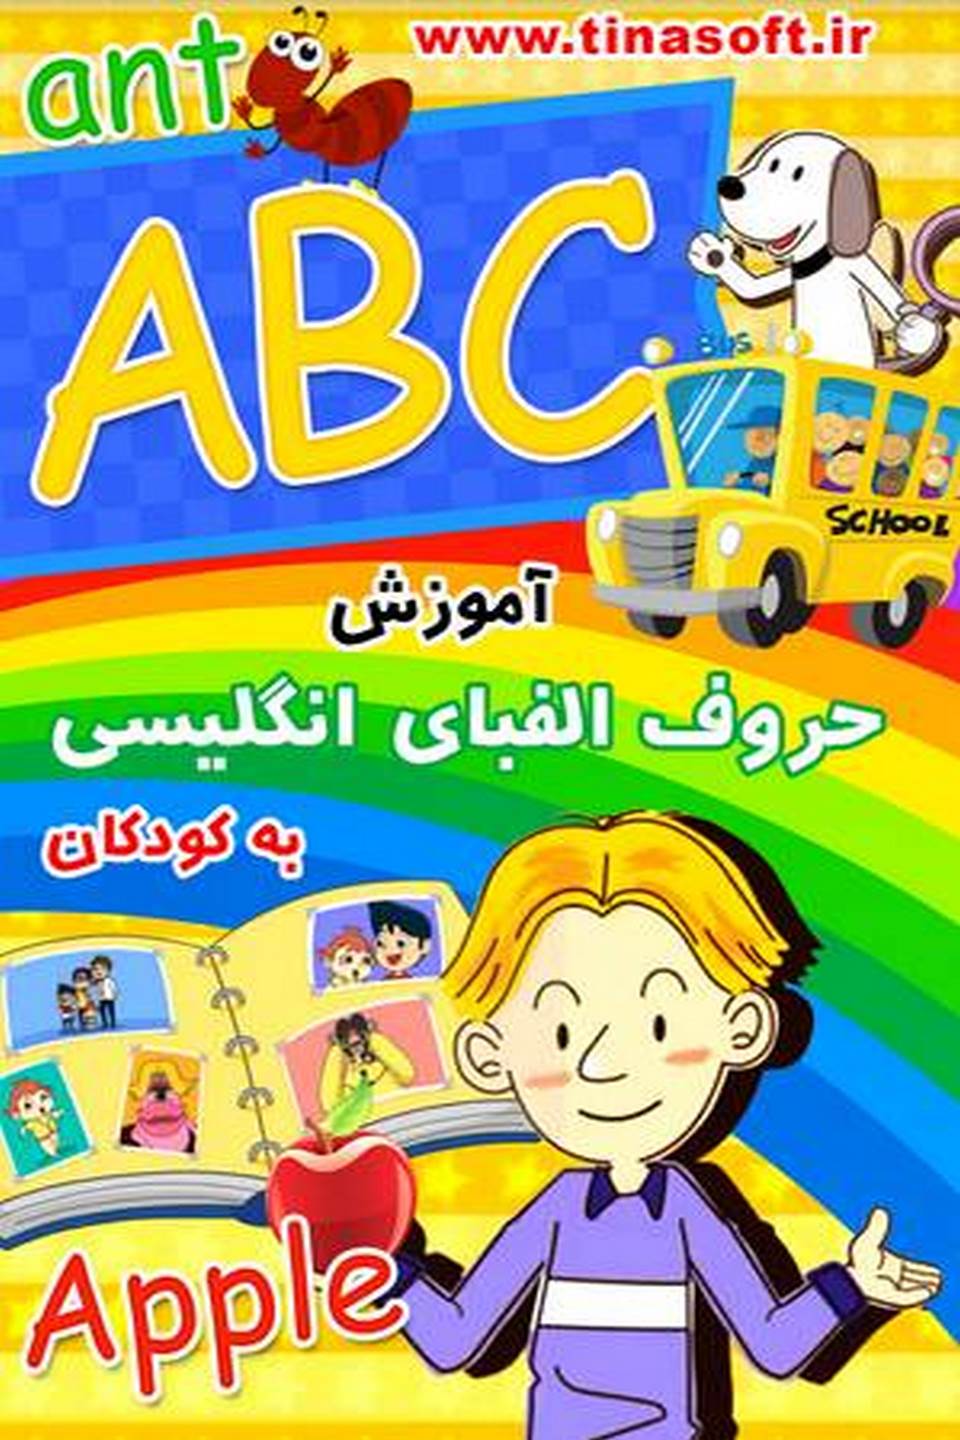 آموزش حروف الفبای انگلیسی به کودکان